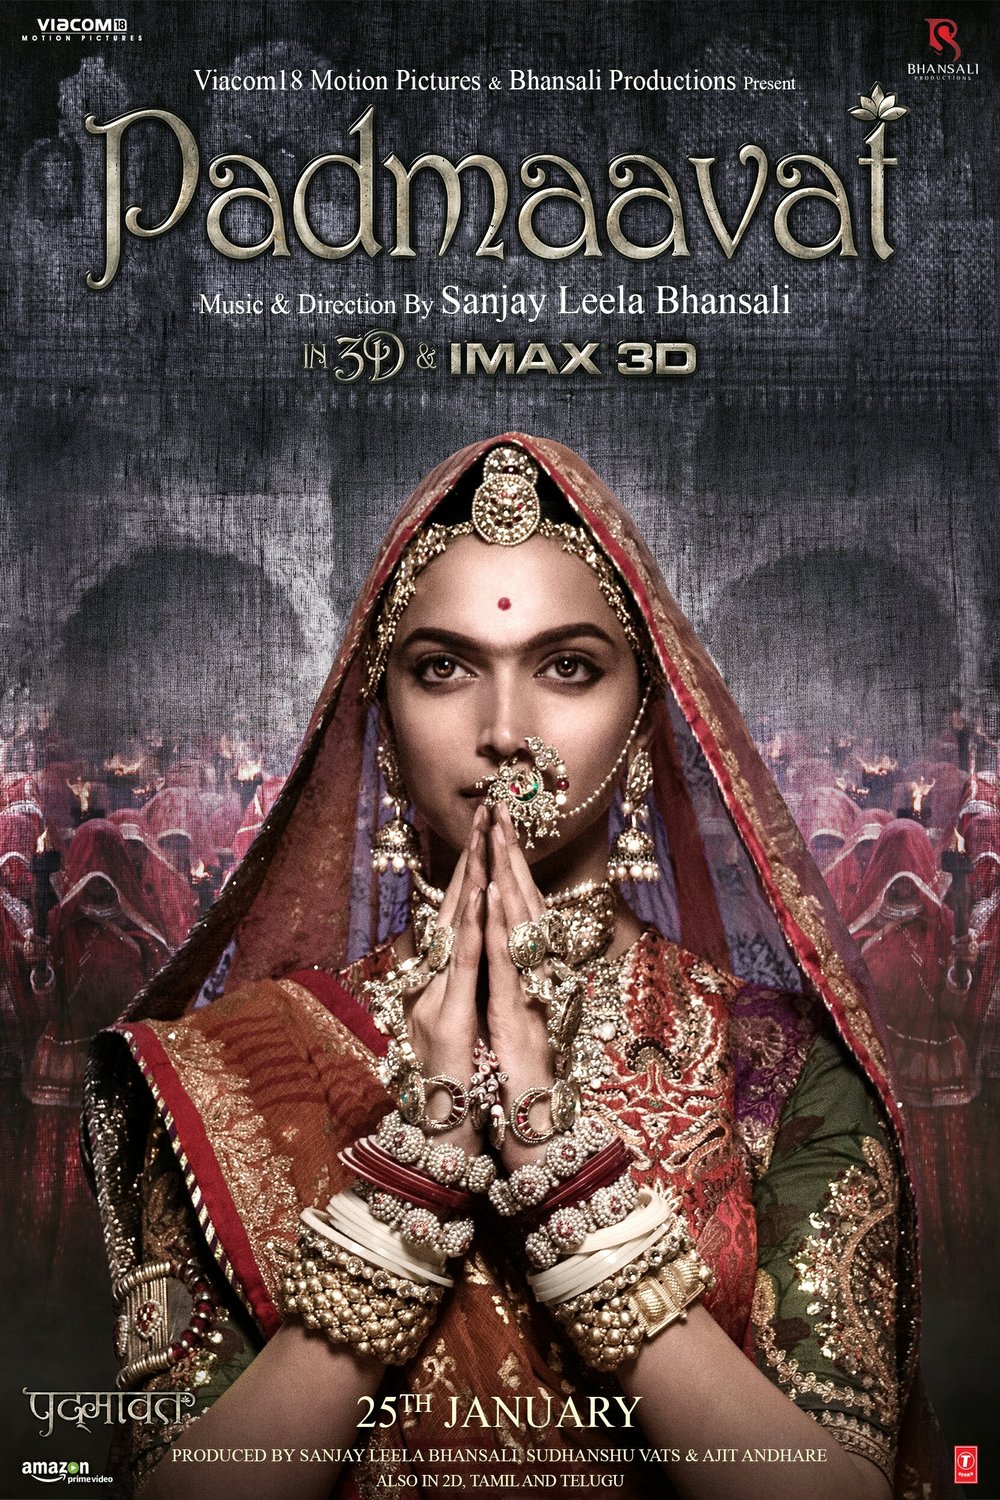 Hindi poster of the movie Padmaavat - Hindi